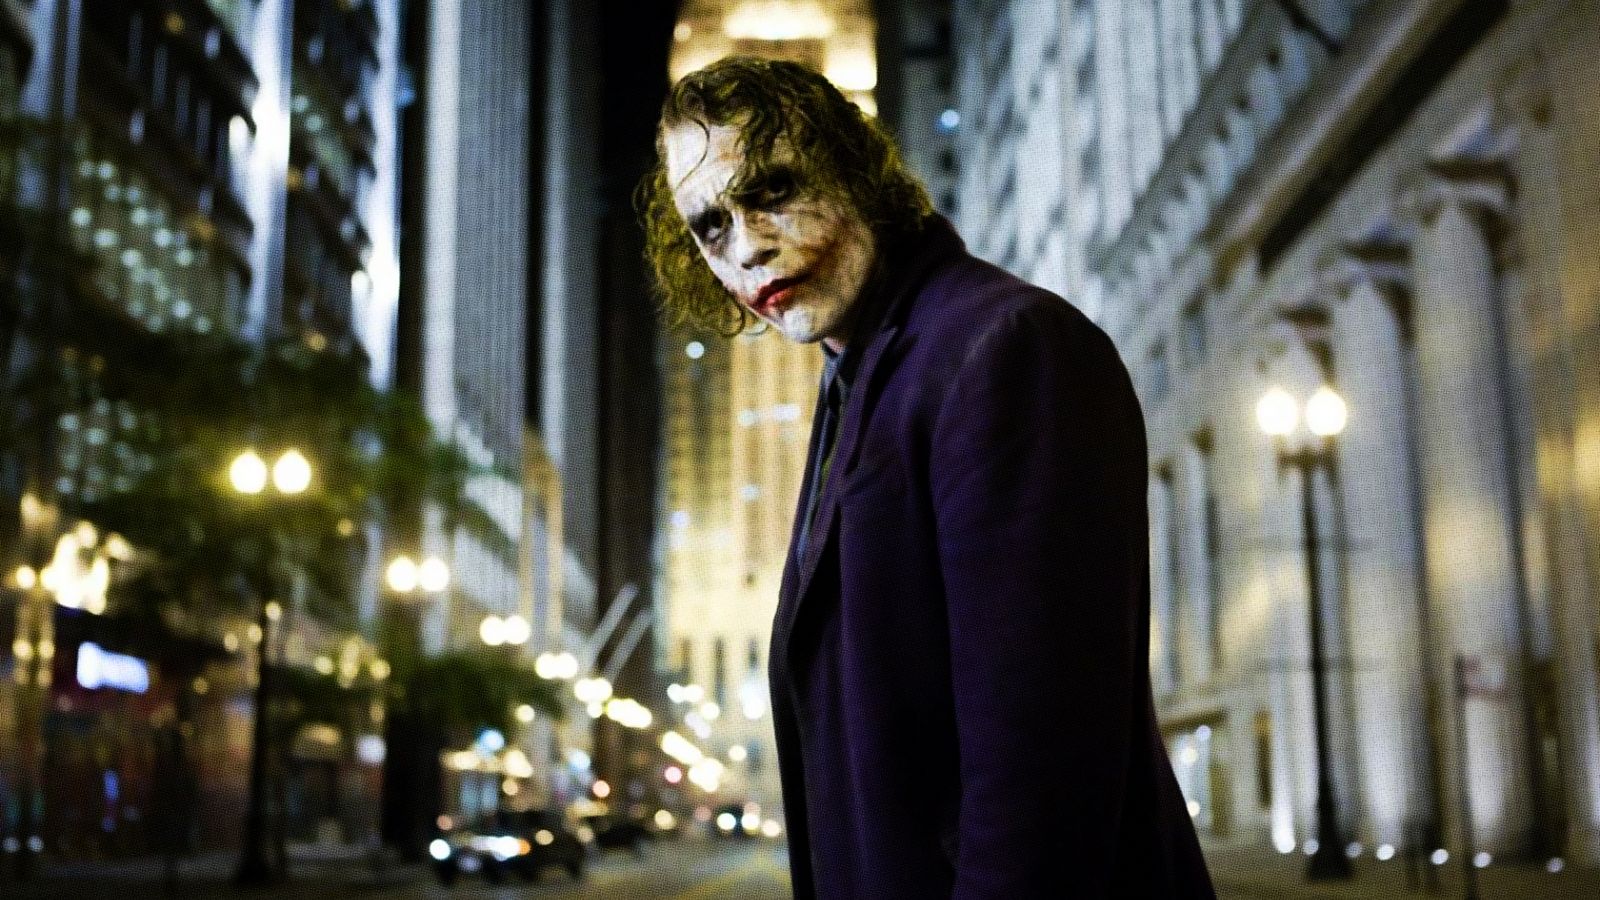 Heath Ledger Joker Wallpapers 4k Hd Heath Ledger Joker Backgrounds On Wallpaperbat 